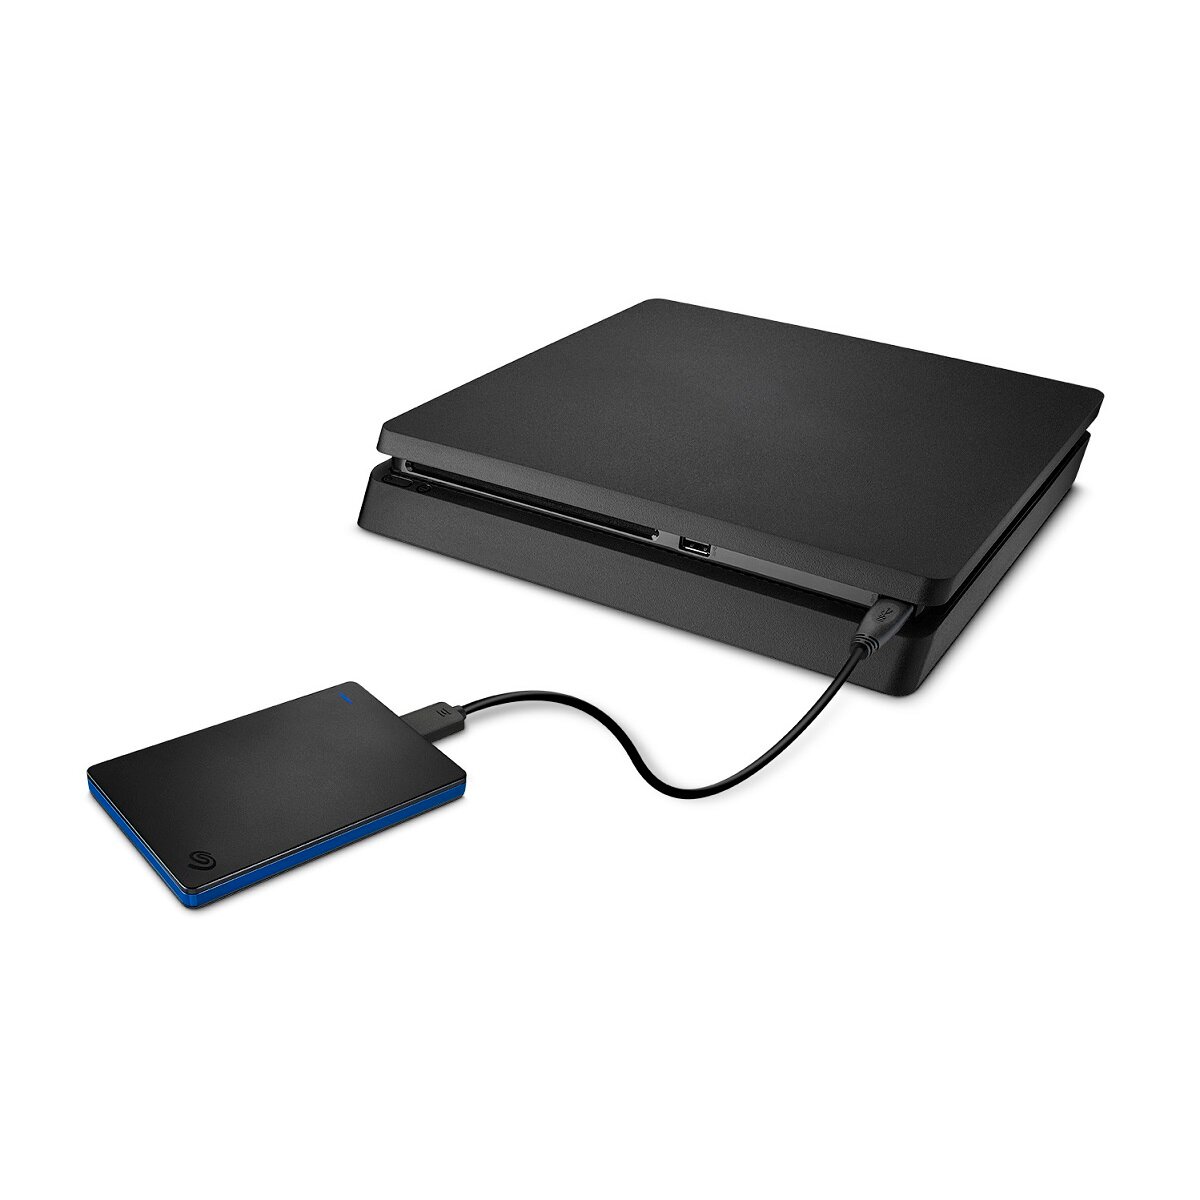 Dysk do konsoli PS4/PS5 Seagate Game Drive STLL4000200 podłączony do konsoli Playstation 4 widoczny lekko z boku